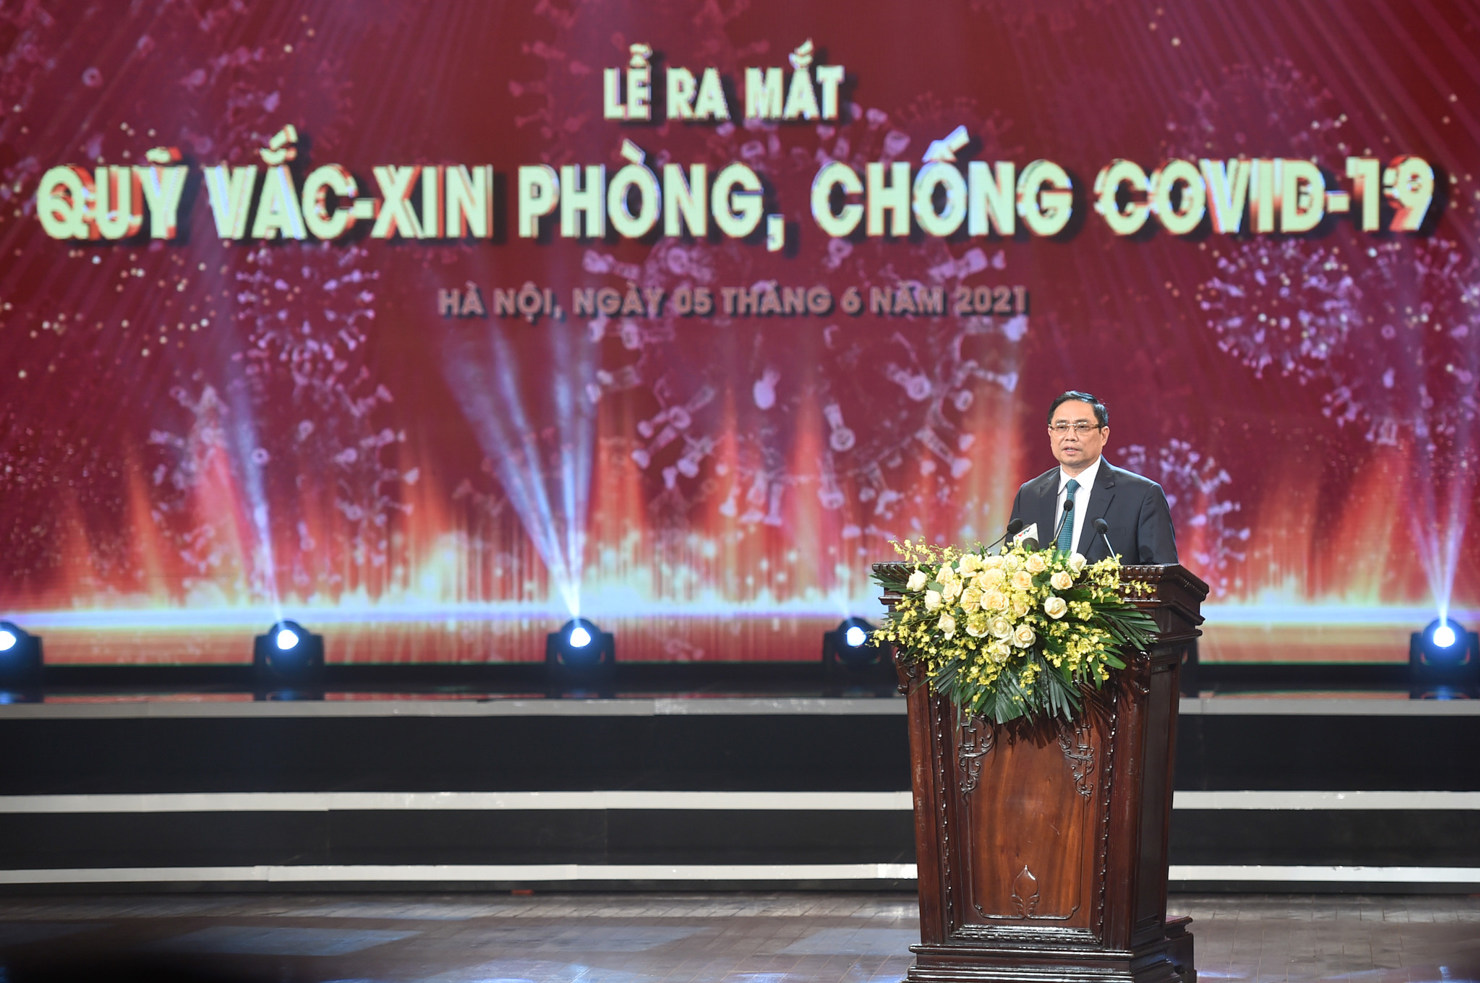 Thủ tướng Chính phủ Phạm Minh Chính phát biểu tại Lễ ra mắt Quỹ vắc xin phòng, chống Covid-19. Nguồn: chinhphu.vn